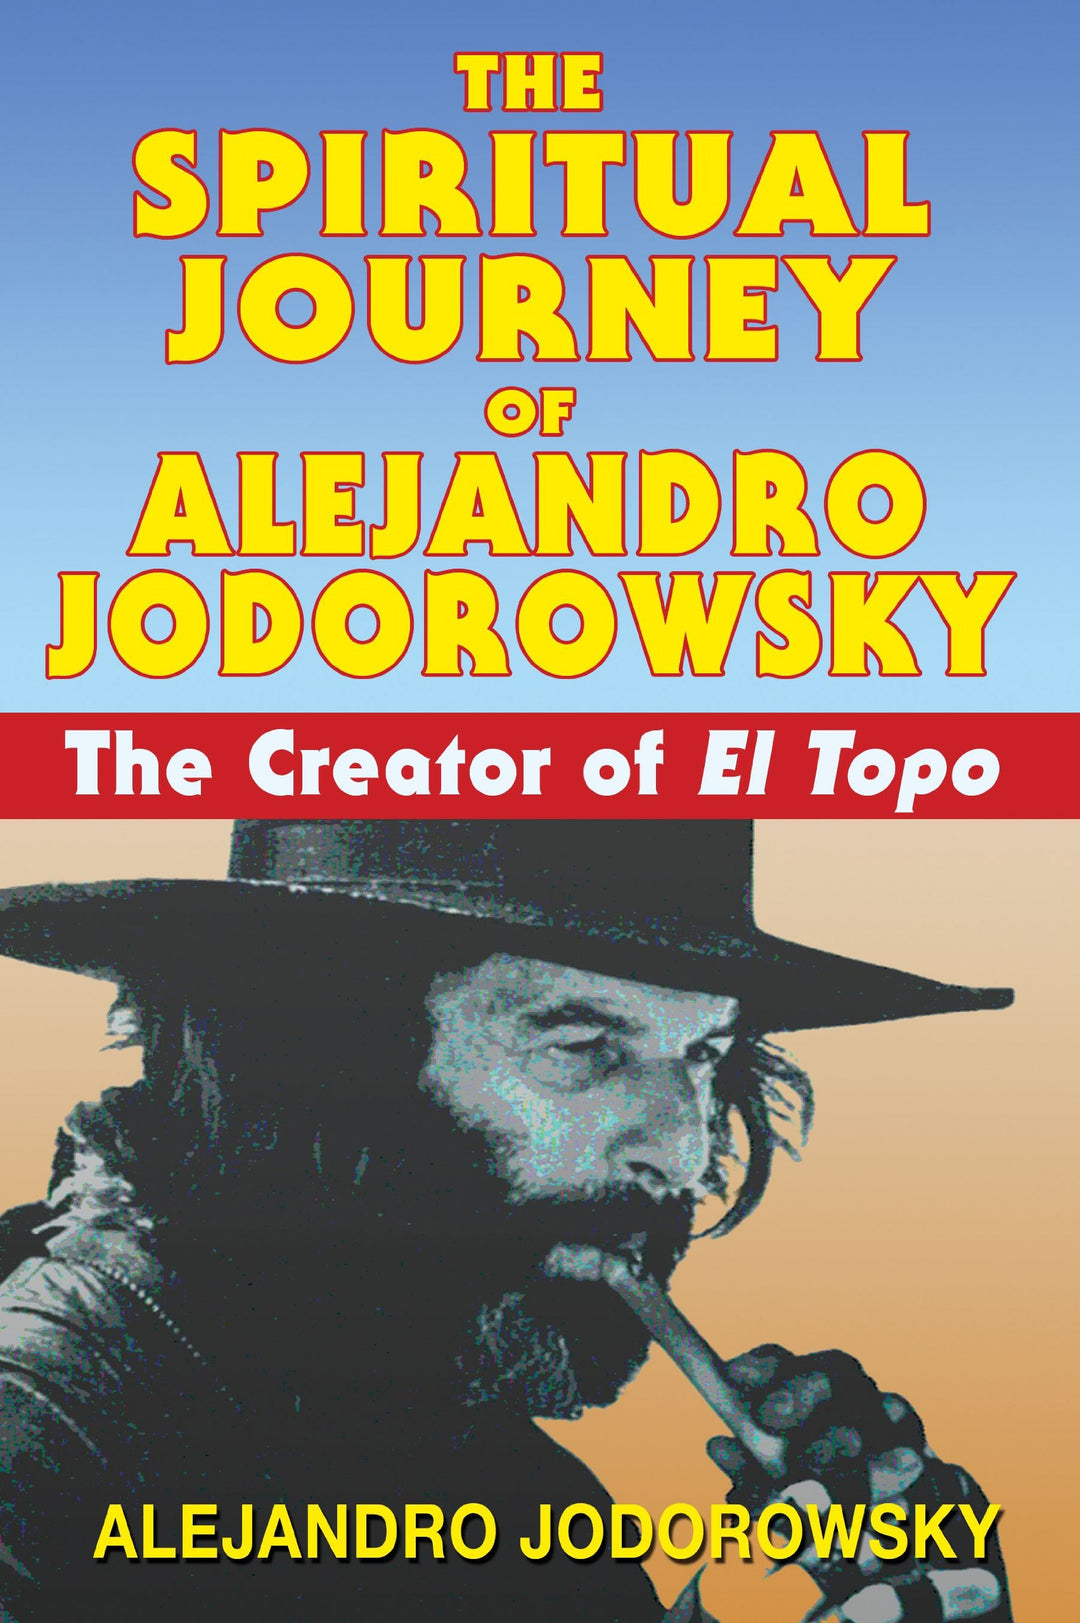 The Spiritual Journey of Alejandro Jodorowsky: The Creator of El Topo by Alejandro Jodrowsky